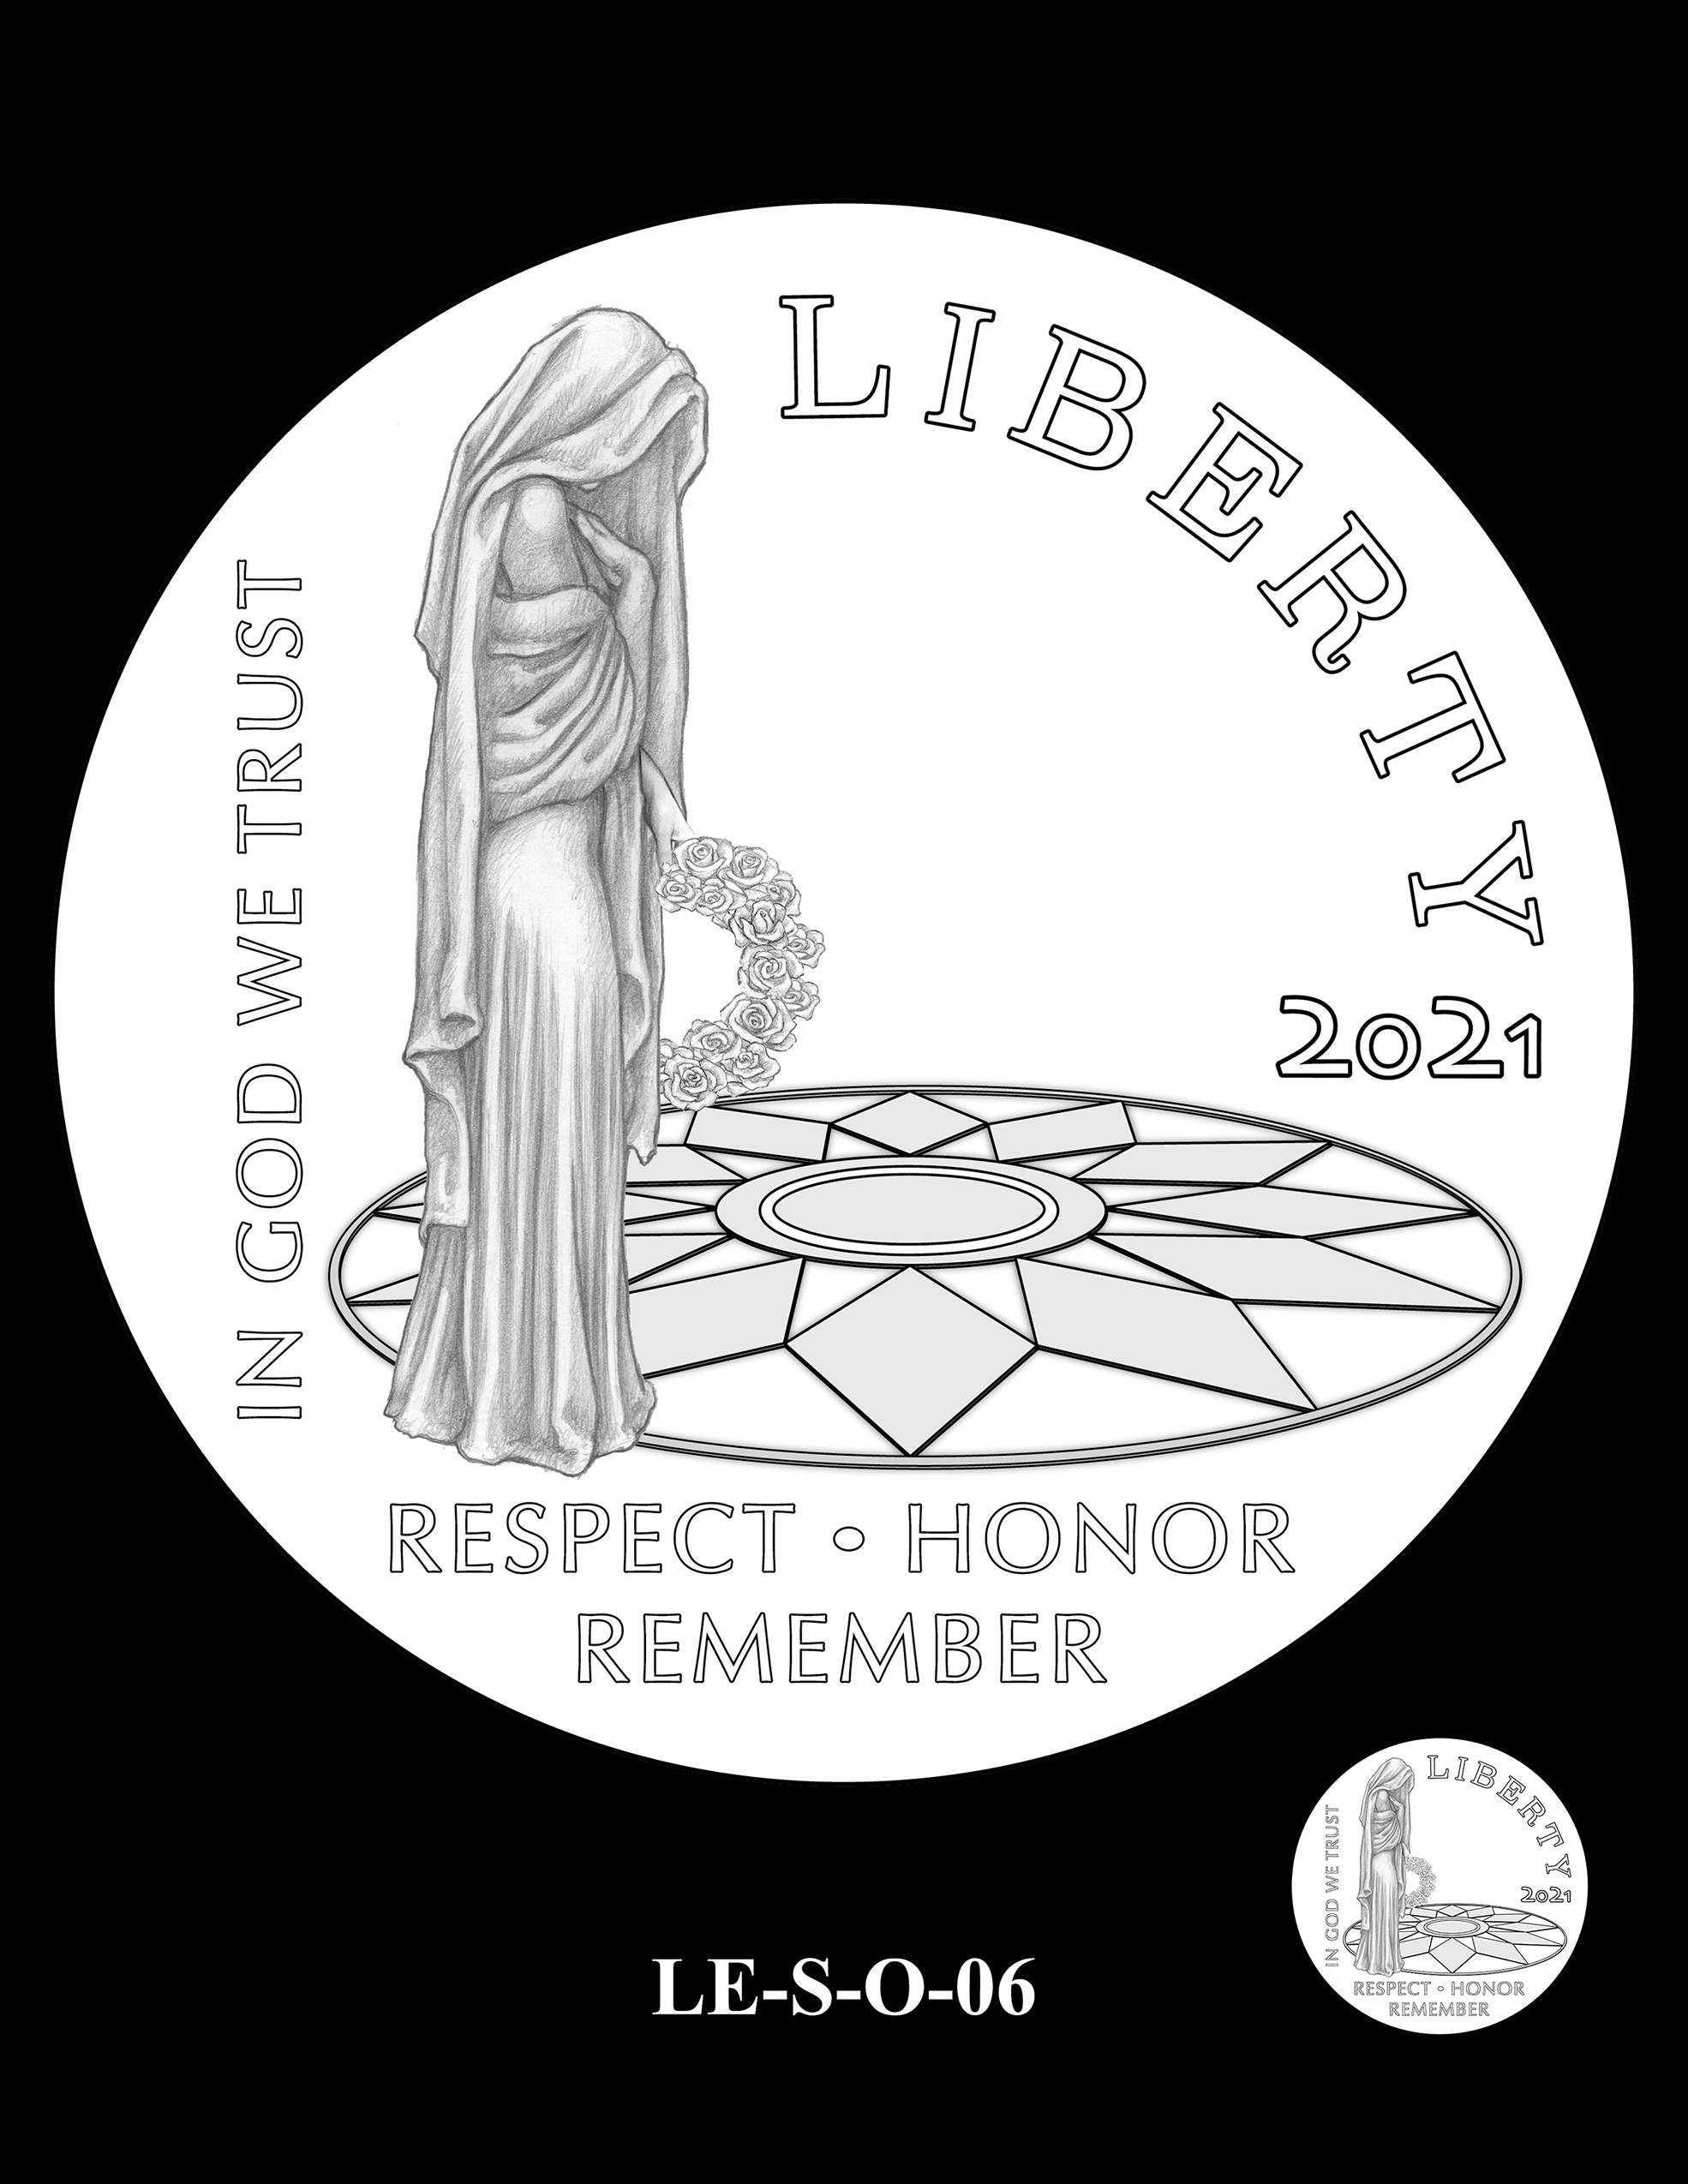 LE-S-O-06 -- National Law Enforcement Museum Commemorative Coin Program